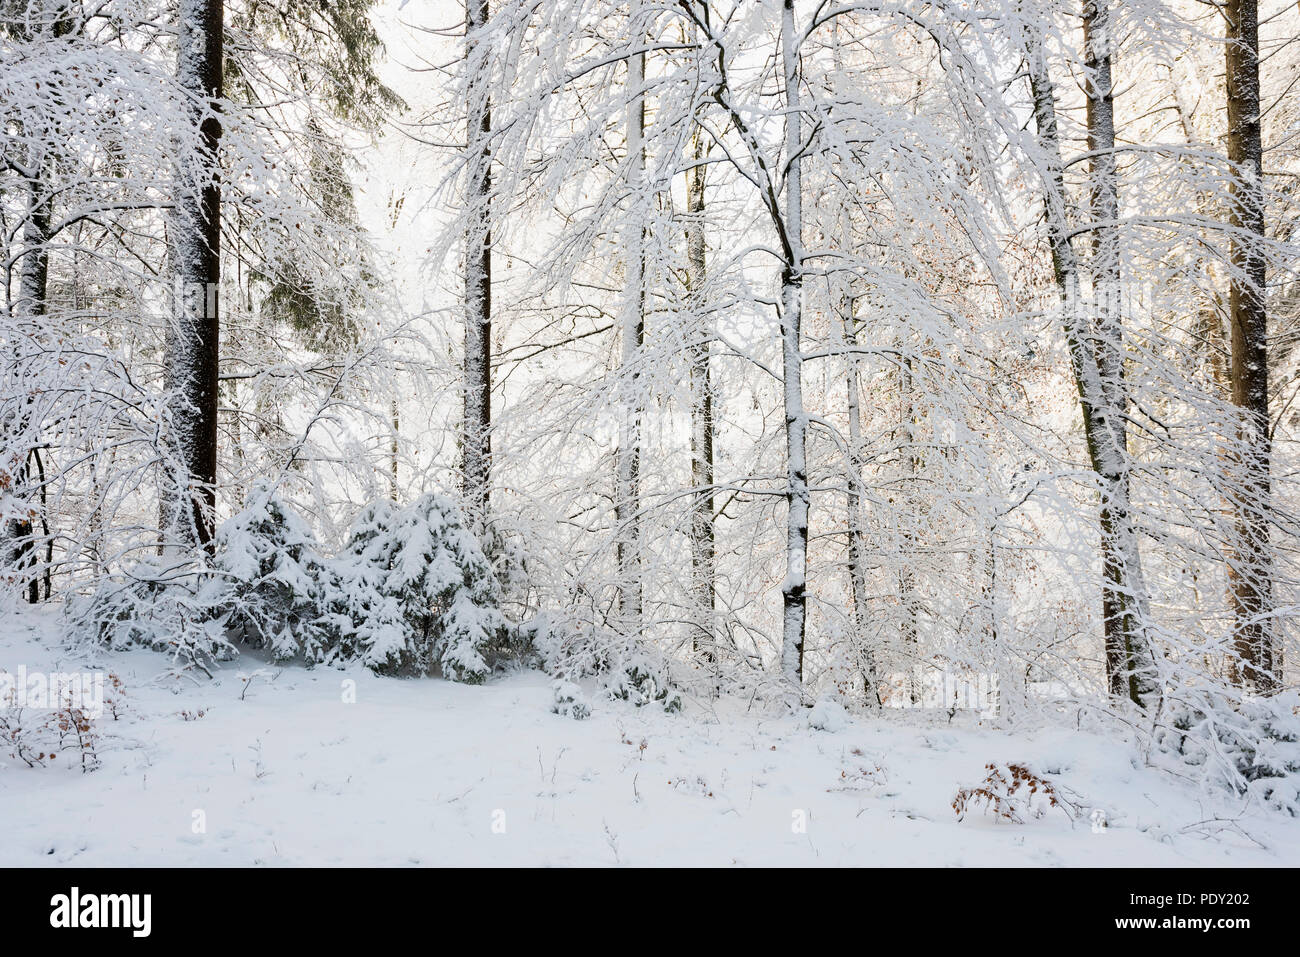 Snowy forest in winter, Höchsten, near Illwangen, Baden-Württemberg, Germany Stock Photo